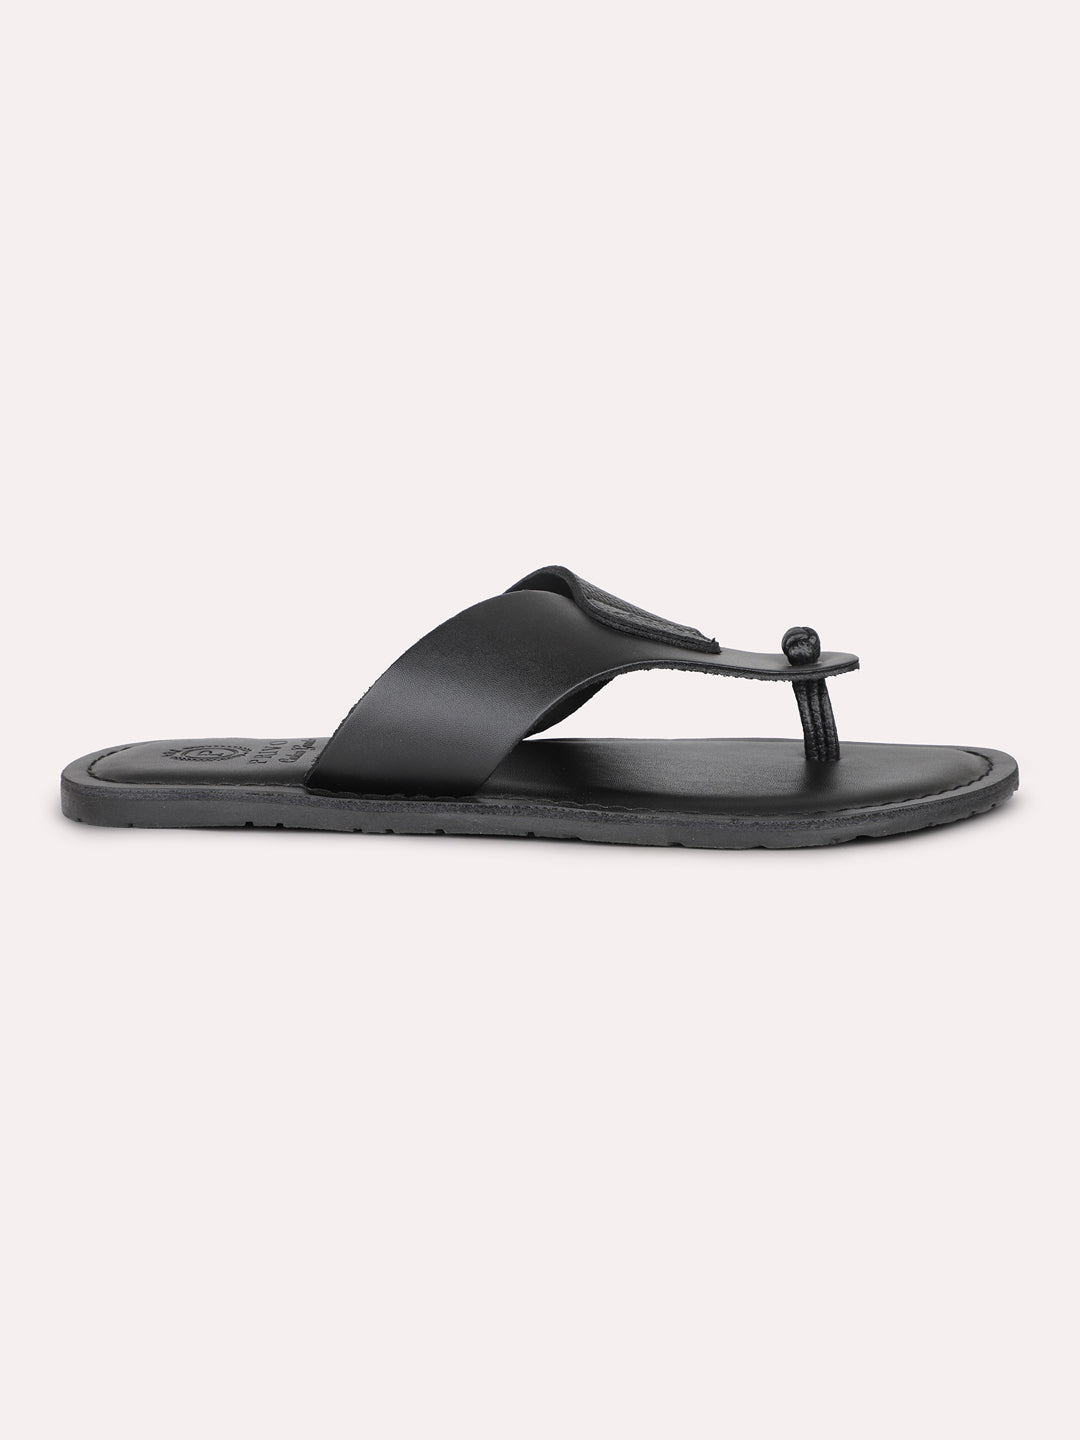 Privo Black T-starp Casual Sandal For Men